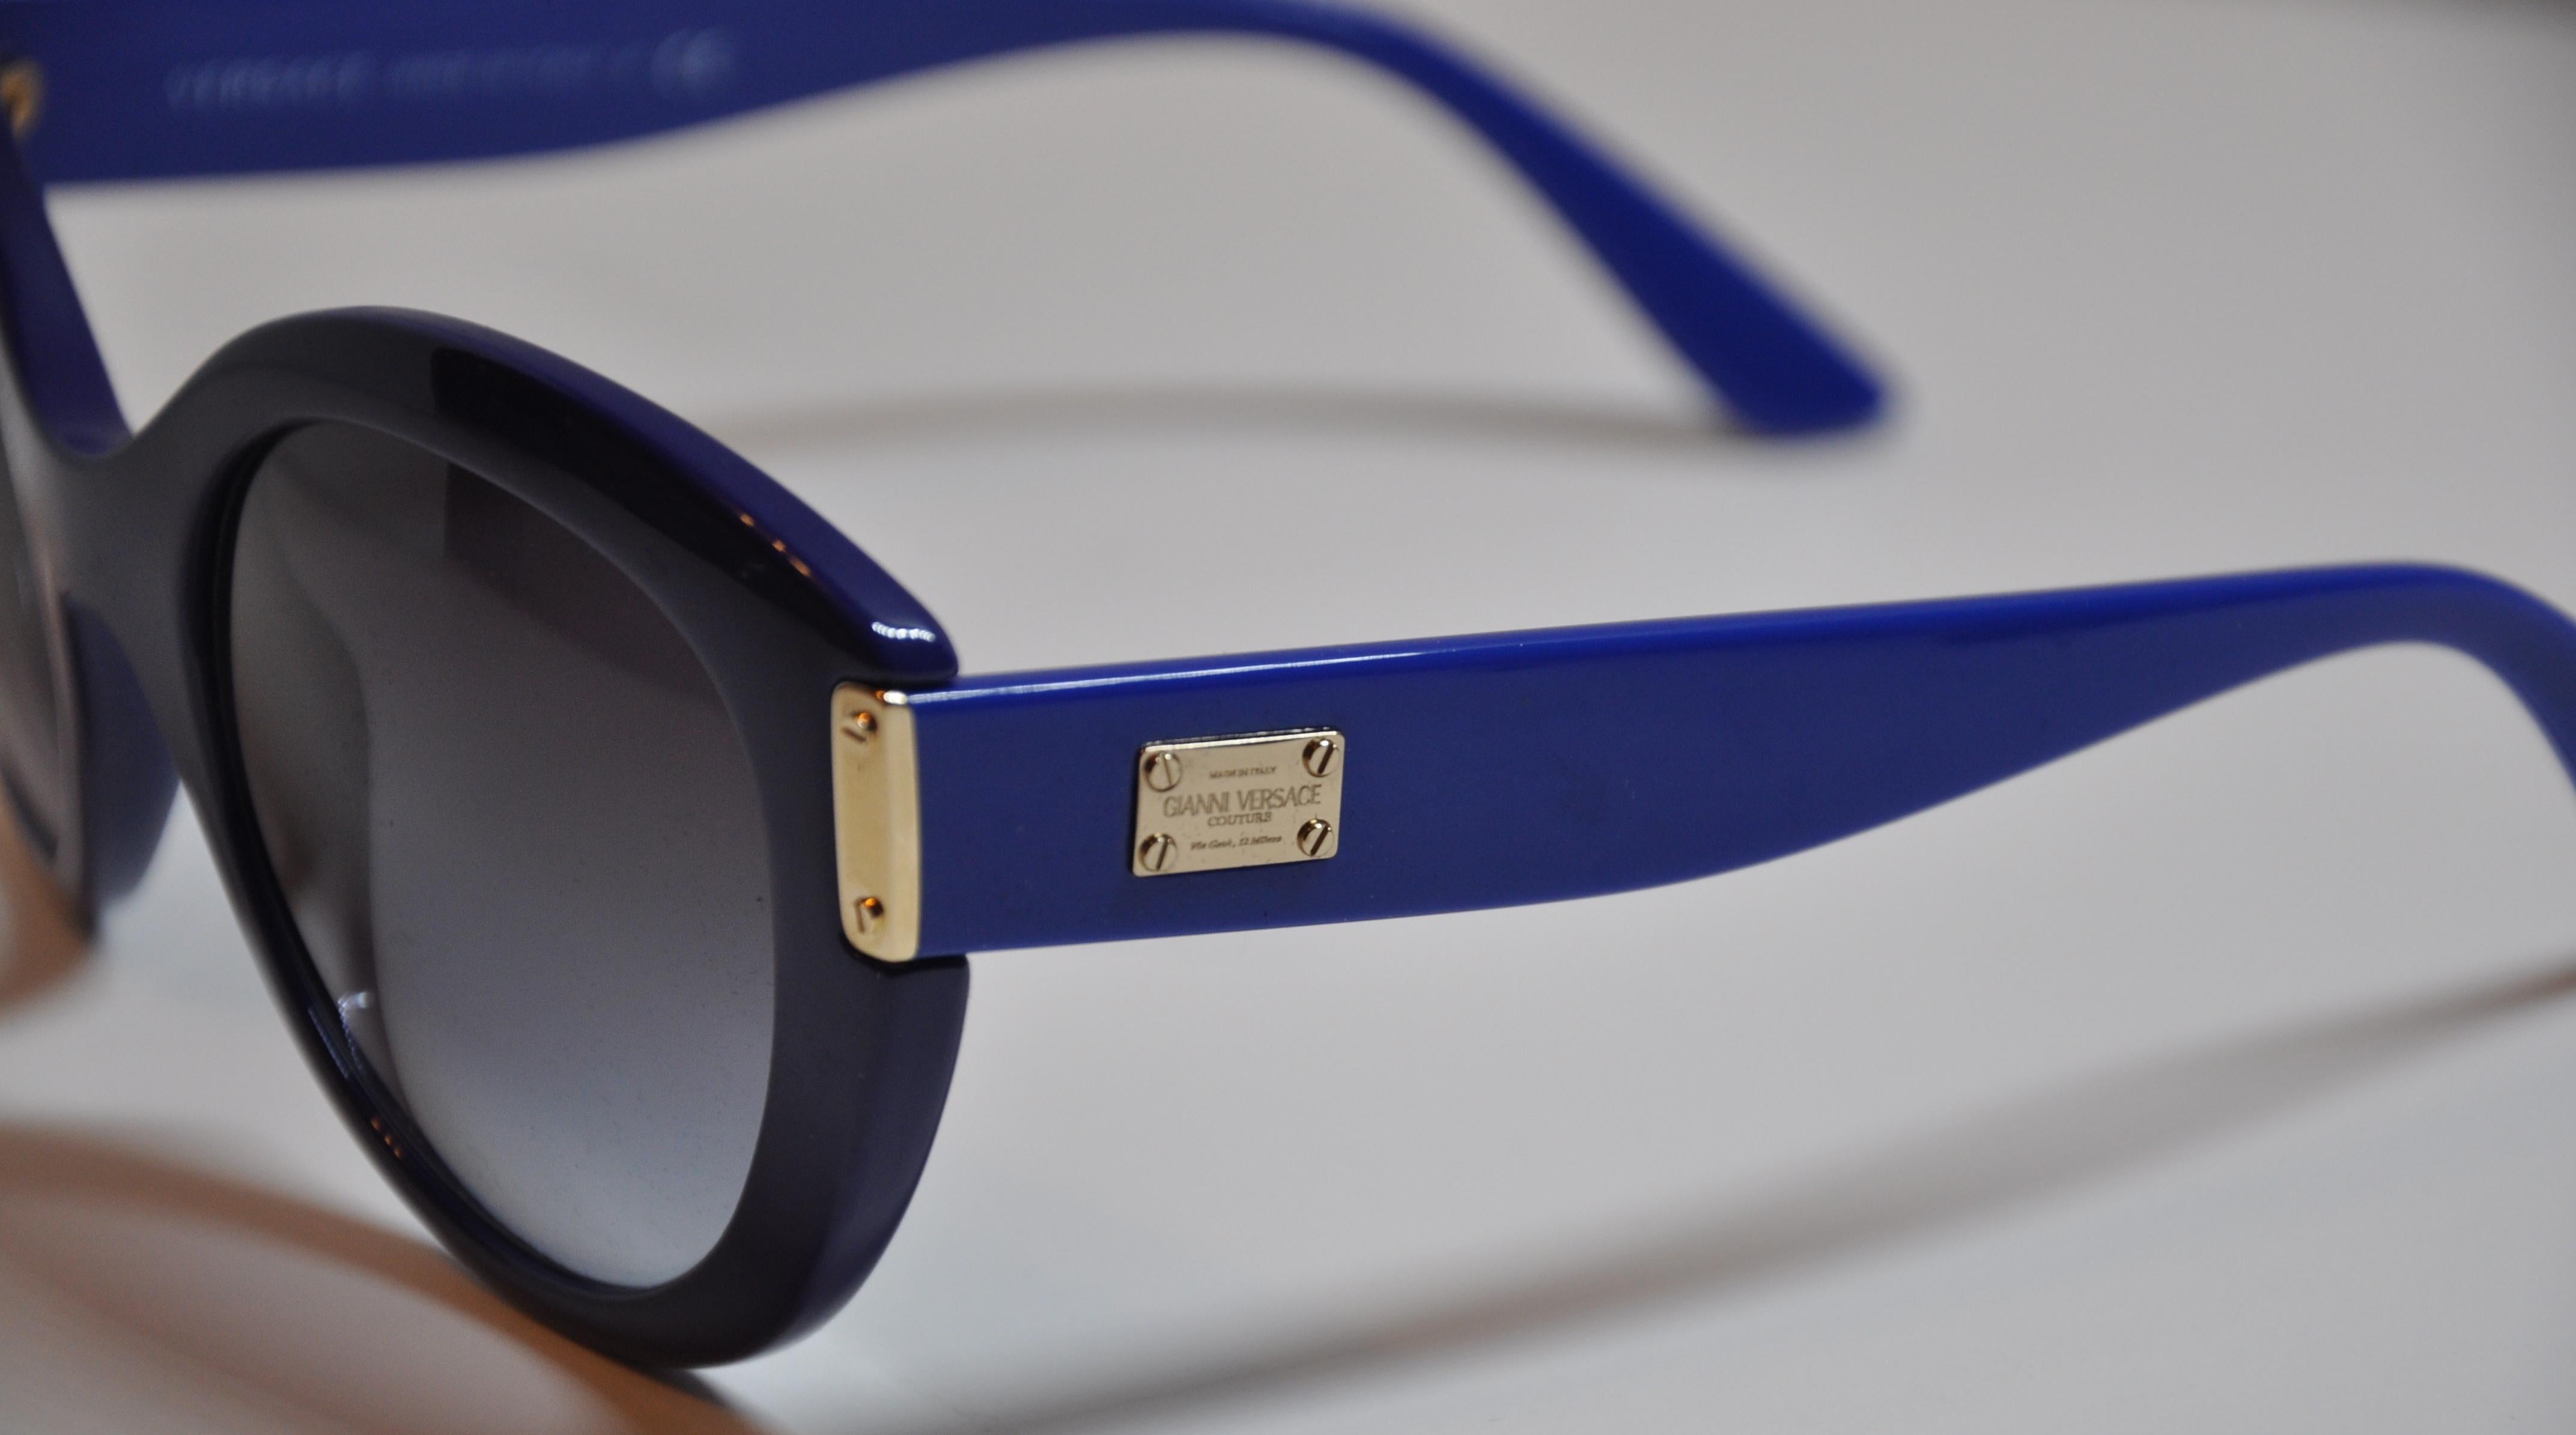        Les lunettes de soleil Gianni Versace sont merveilleusement épaisses et audacieuses, de couleur Lapis, accentuées par des pièces et des clous en or doré. Les bras sont détaillés avec le nom de la signature gravé dans la plaque de ferrure en